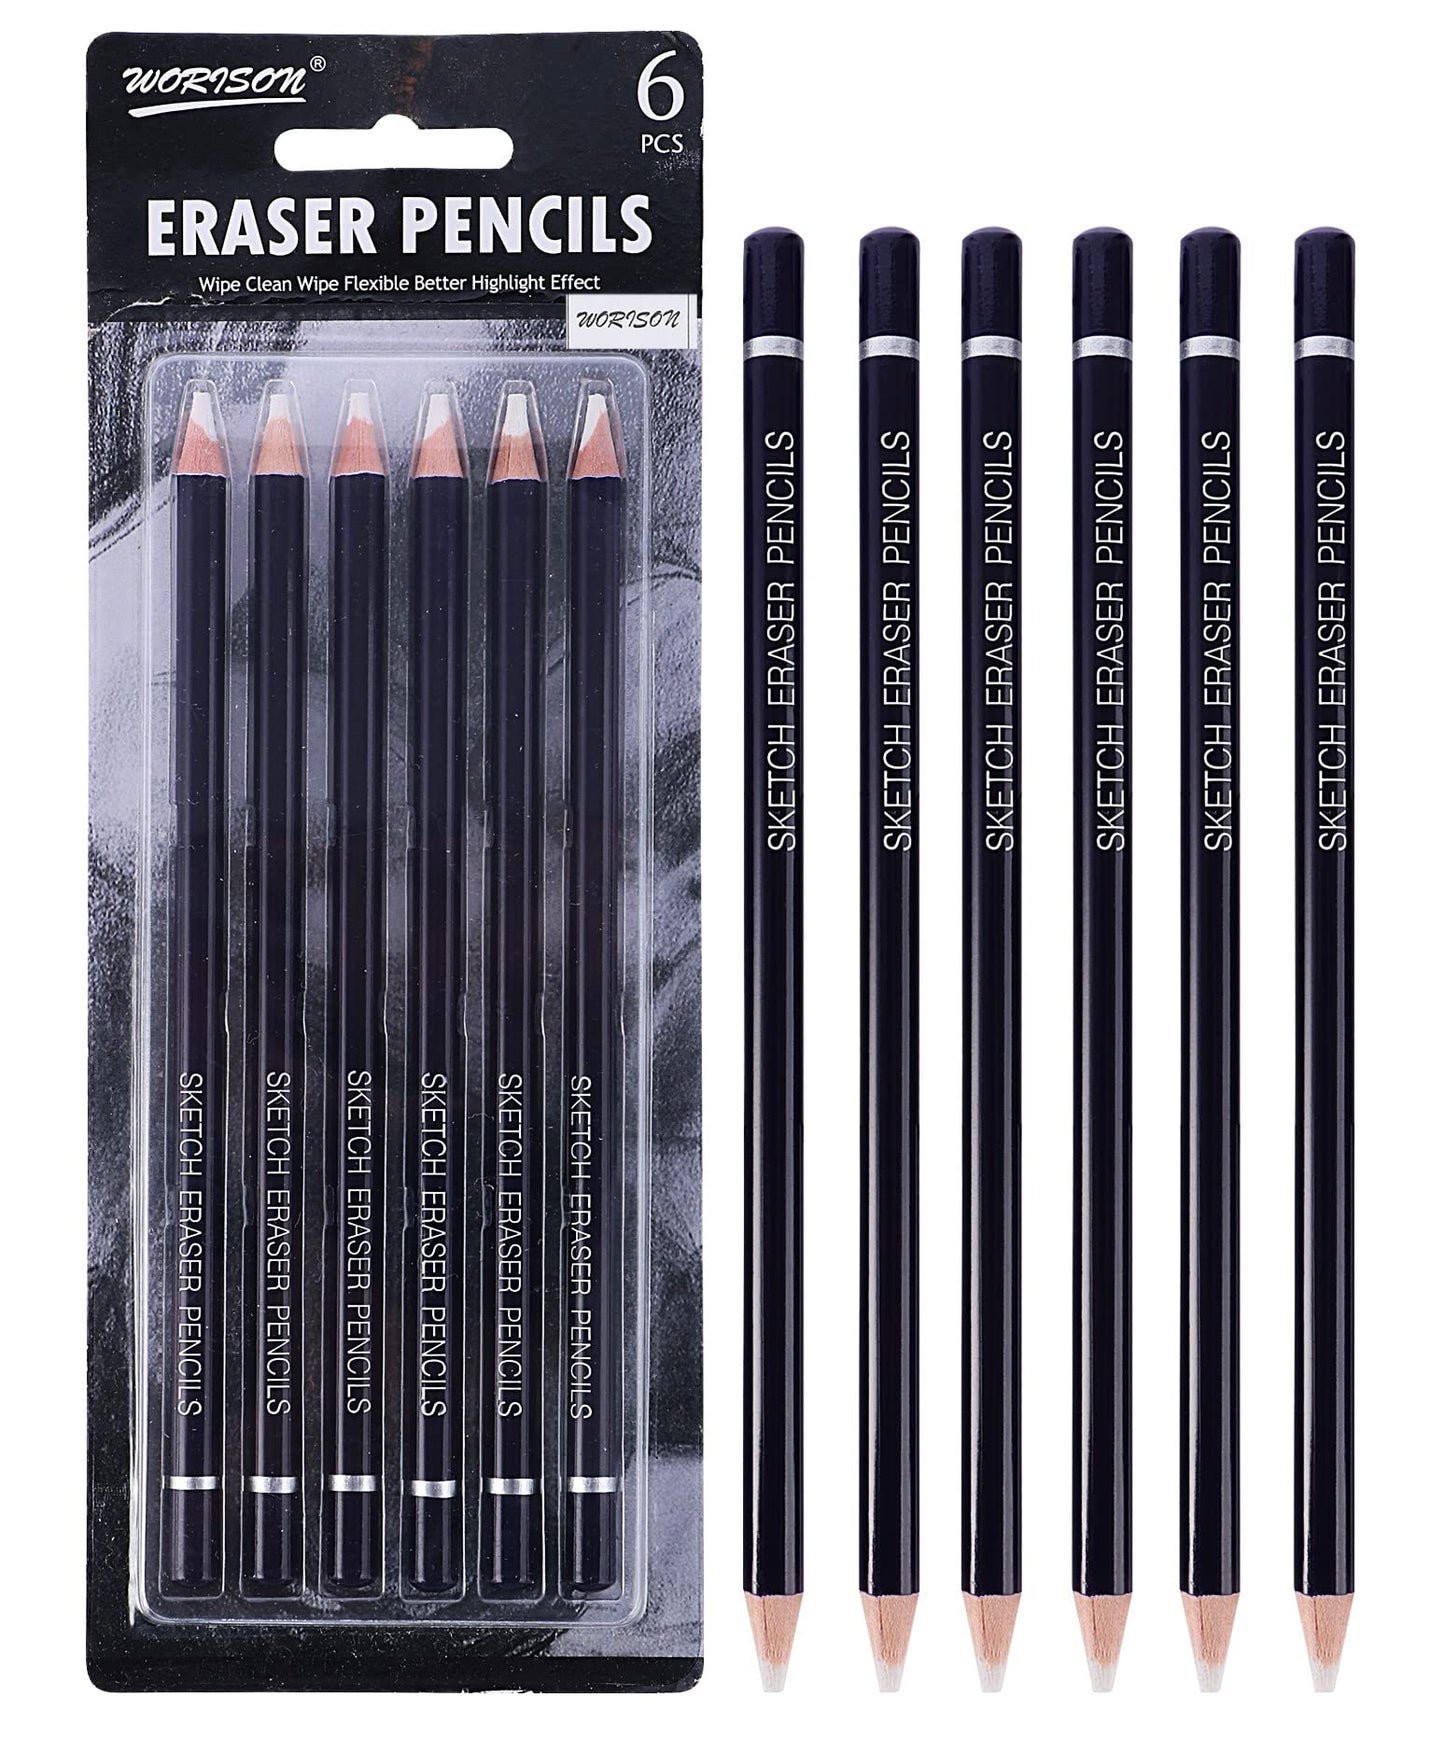 Artpark Worison Eraser Pencils 6 Pcs AP06812